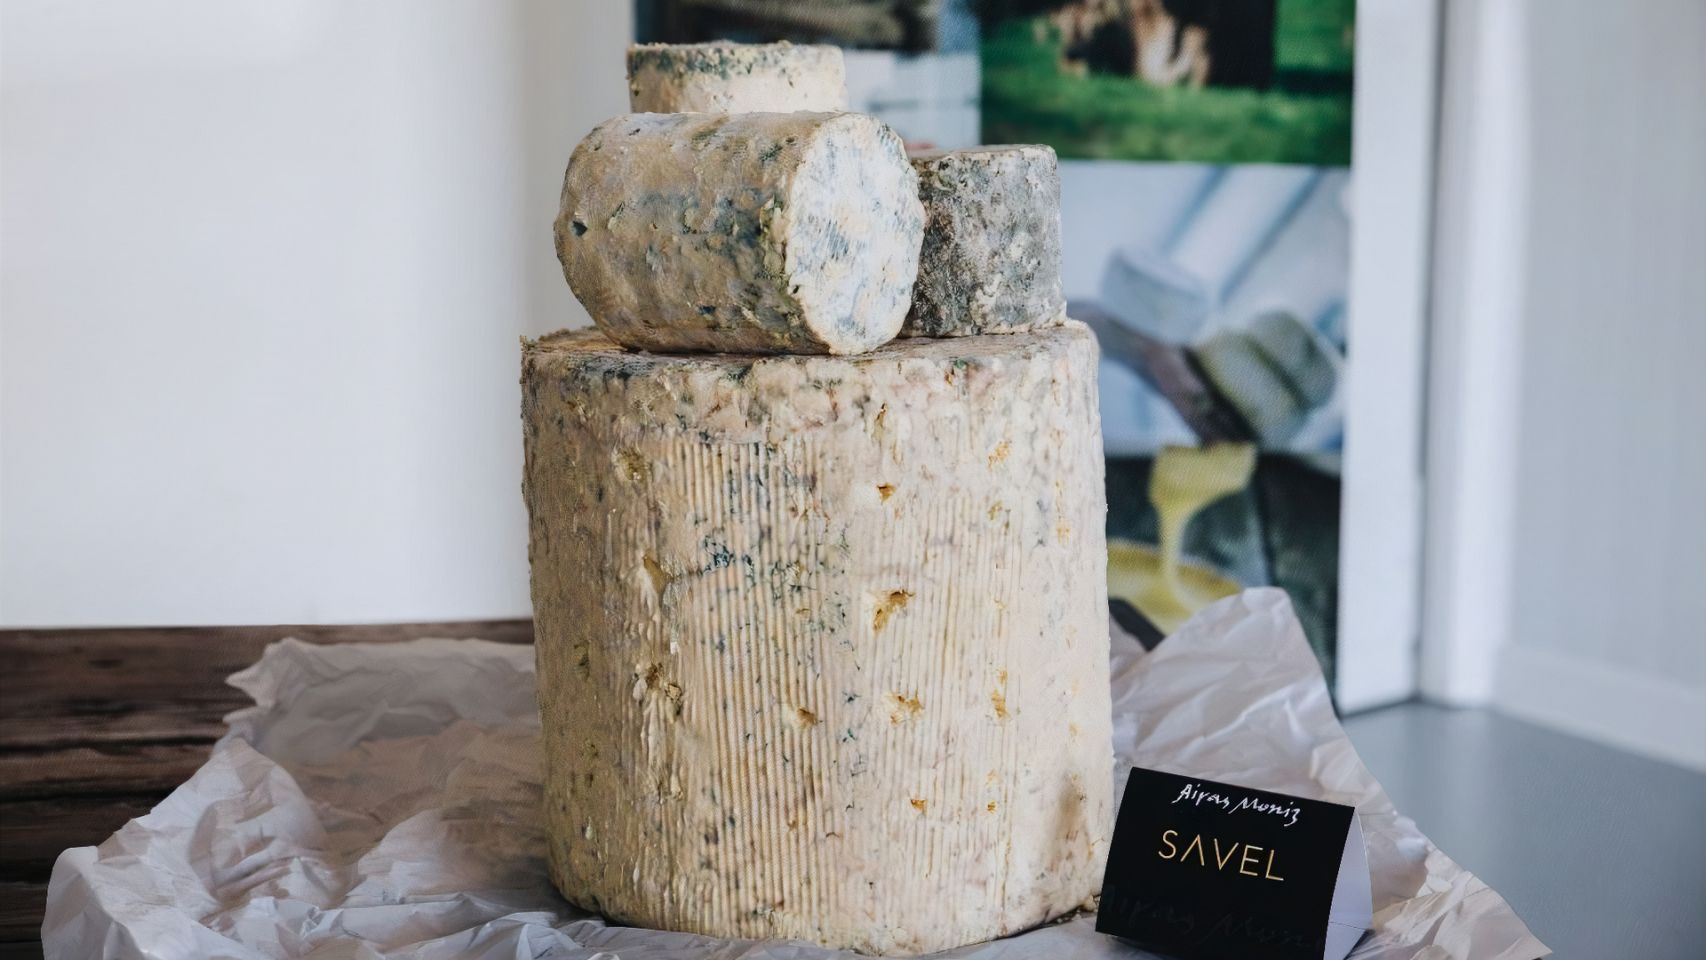 Savel, el queso azul de la empresa gallega Airas Moniz.